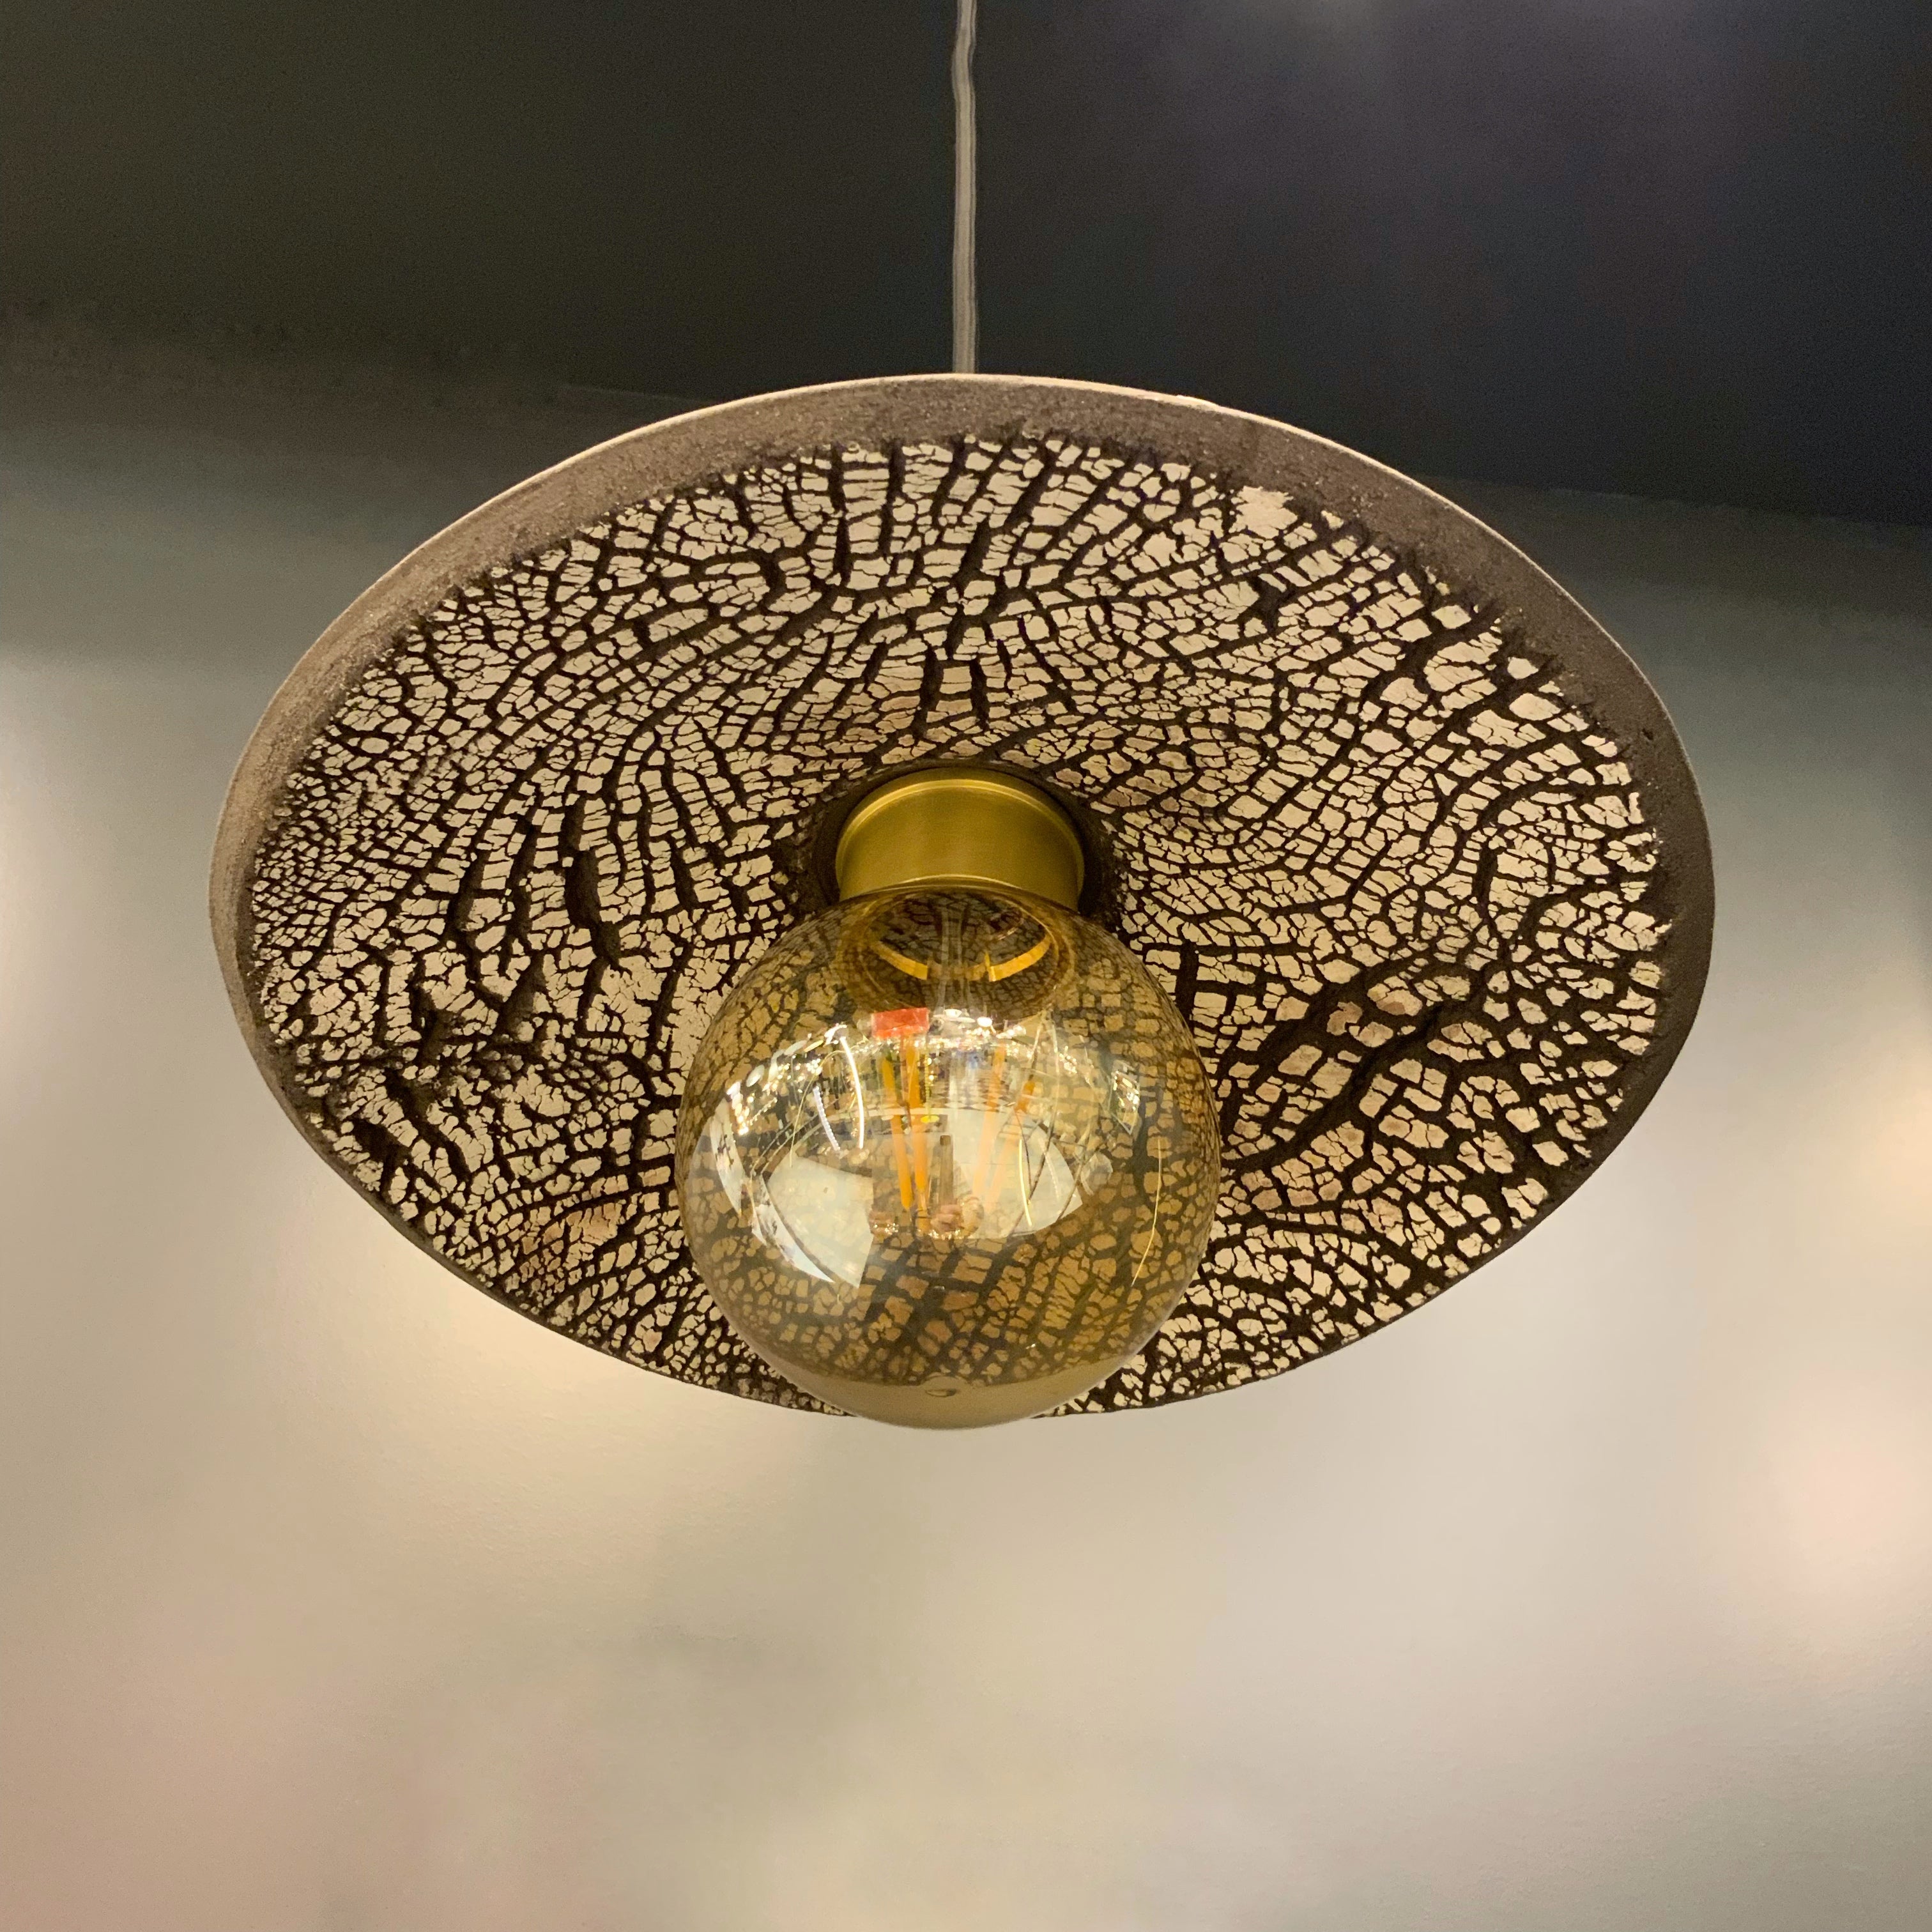 Bespoke ceiling pendant